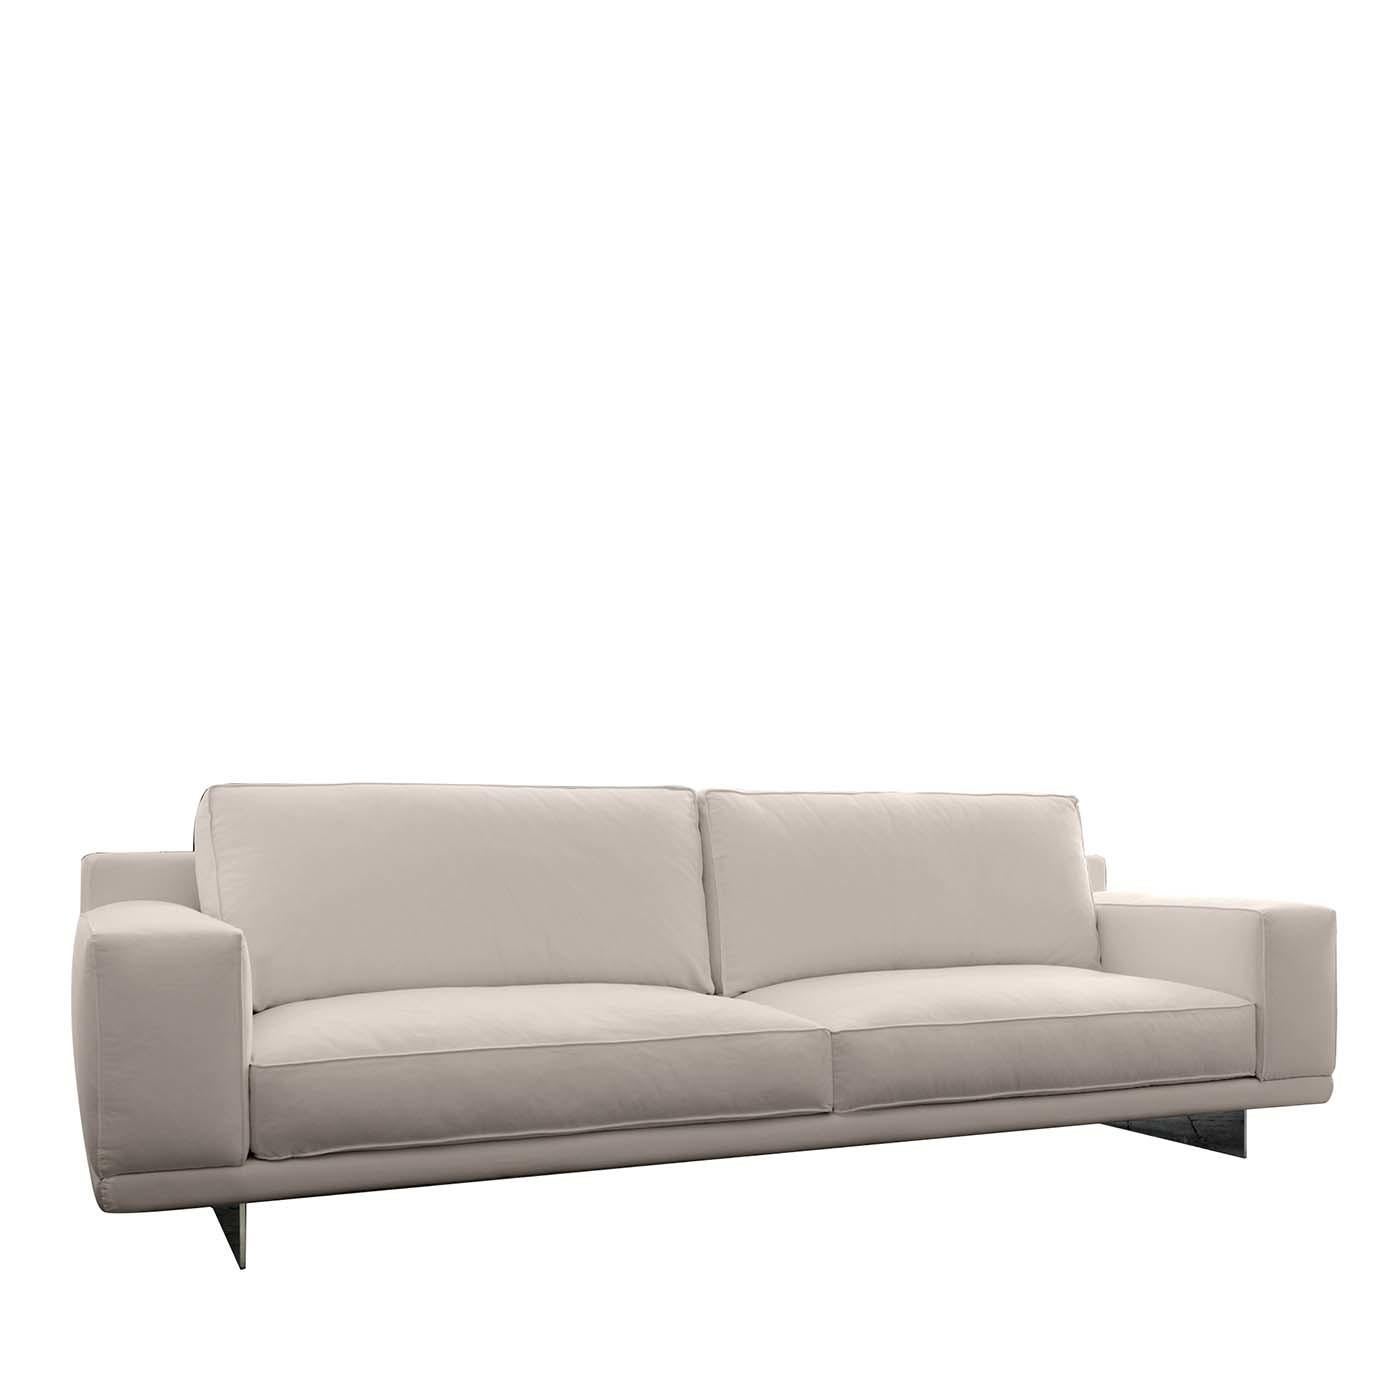 white sofas for sale